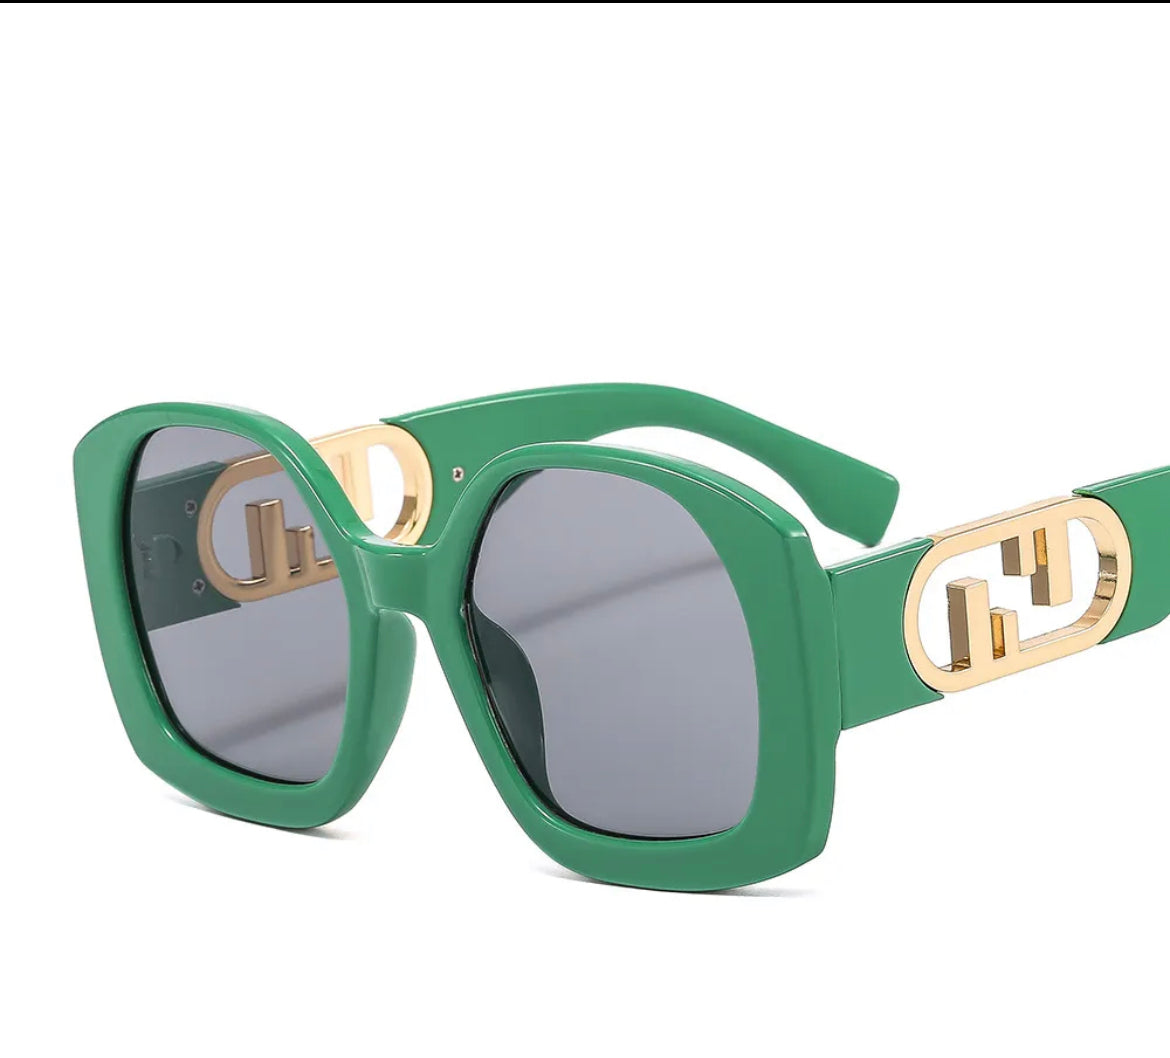 Oversize Square Fashion Sunglasses( several colors)